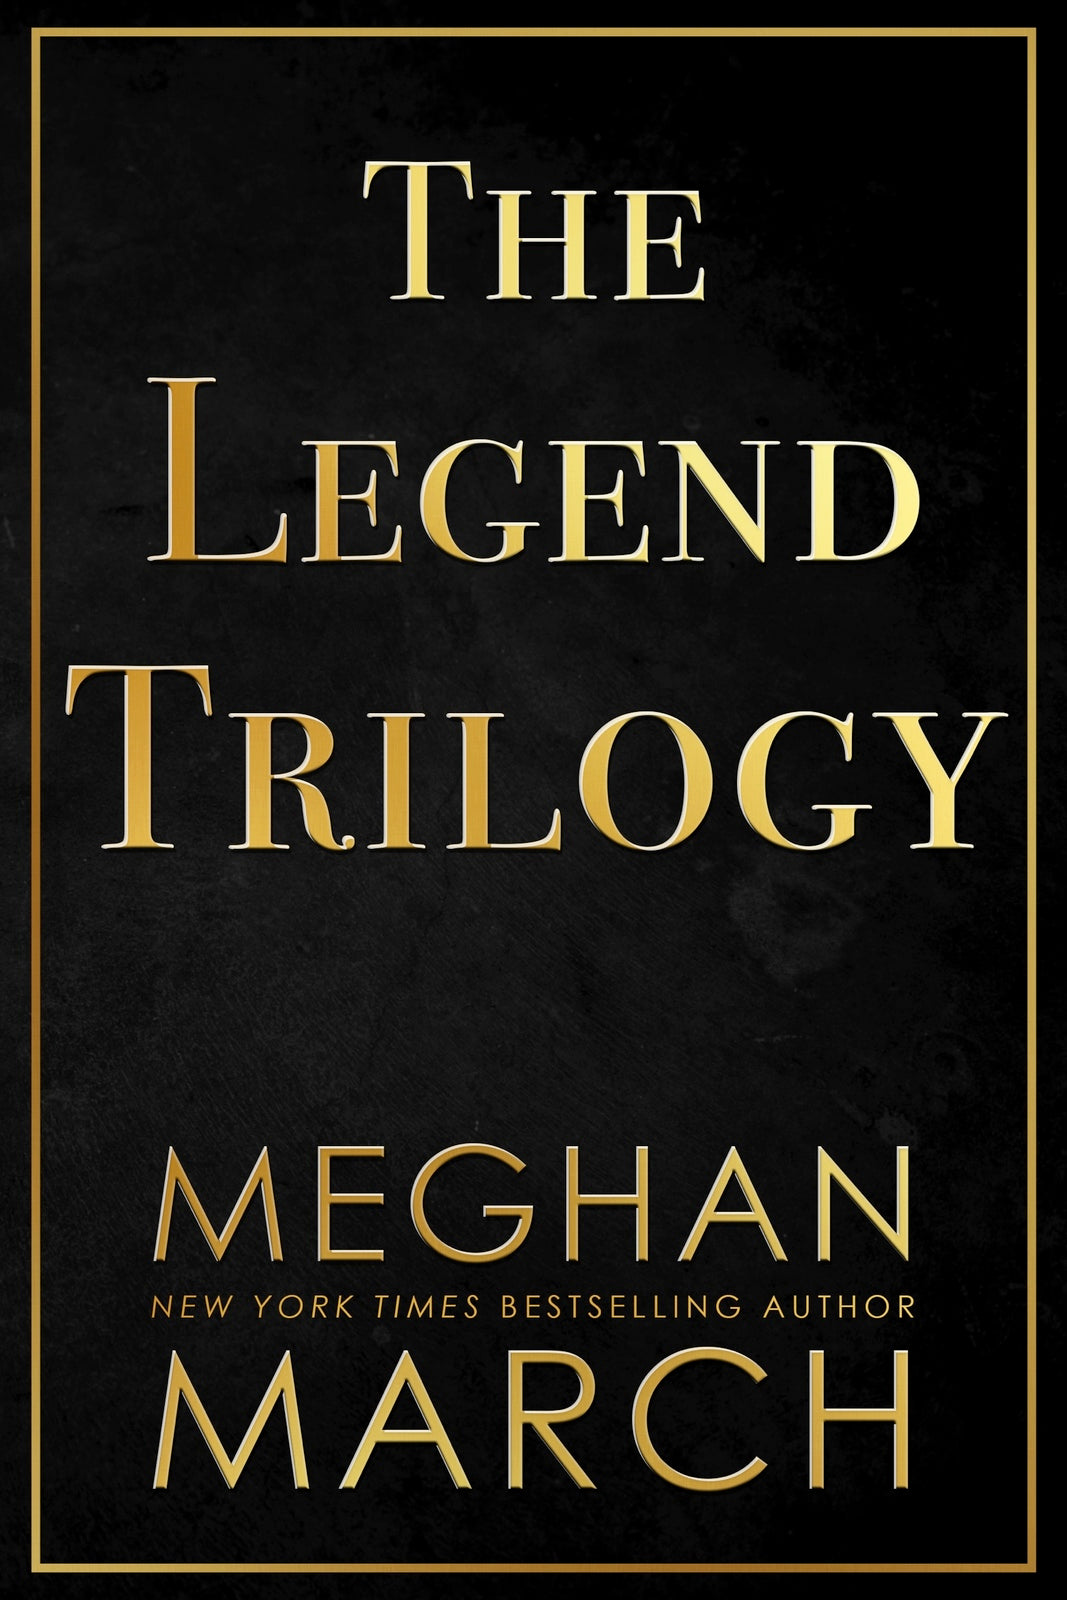 The Legend Trilogy